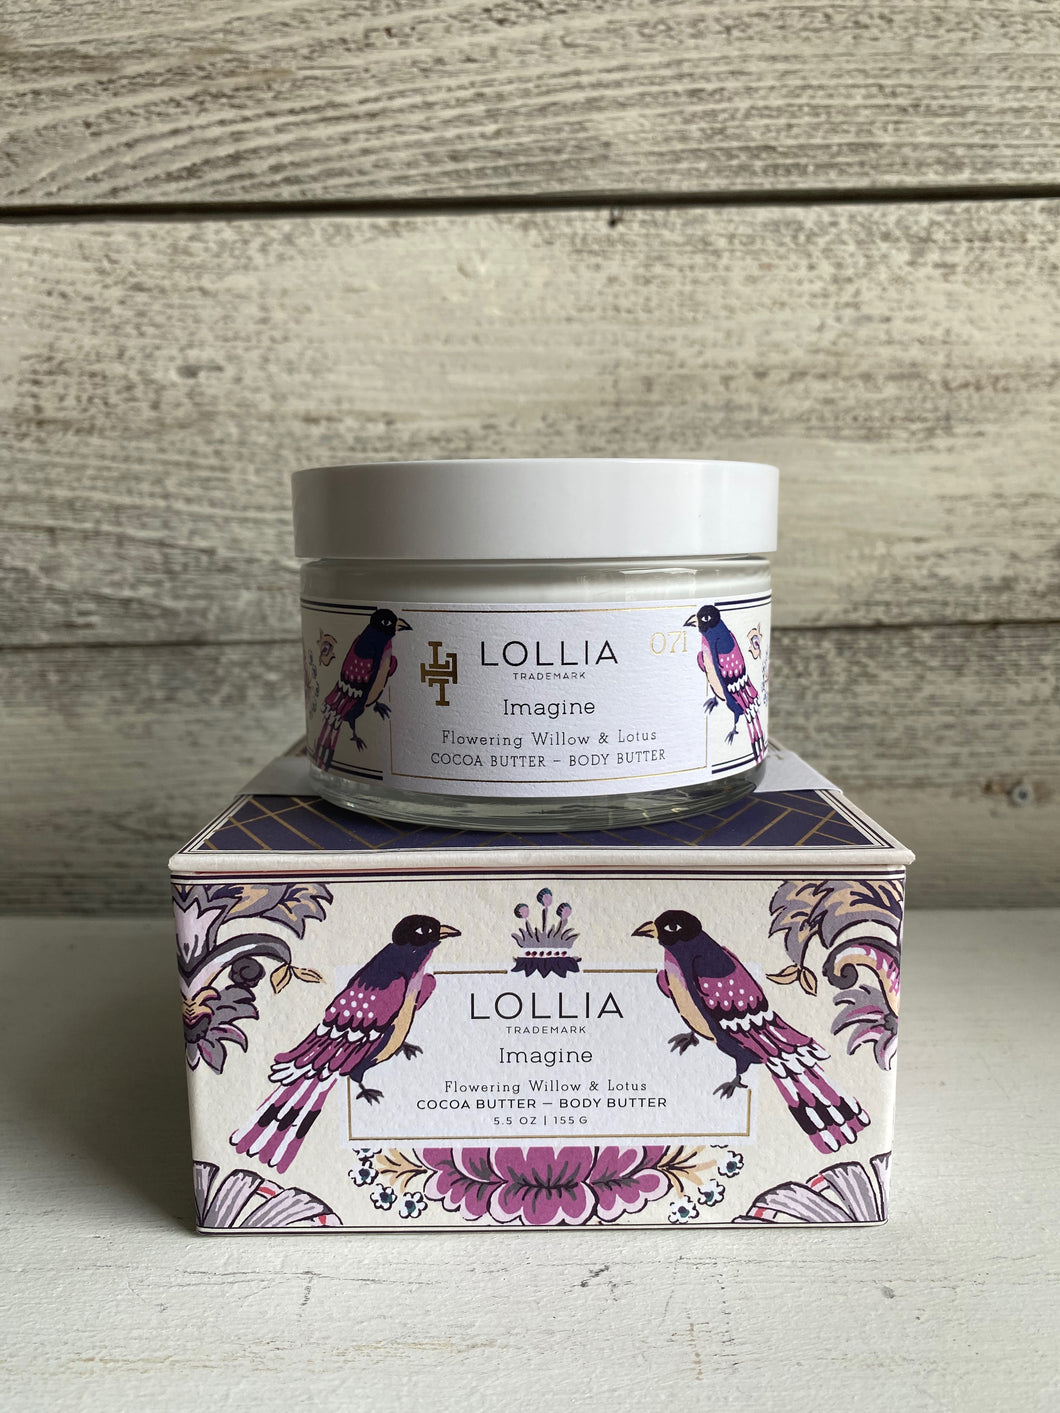 Lollia - Imagine Body Butter